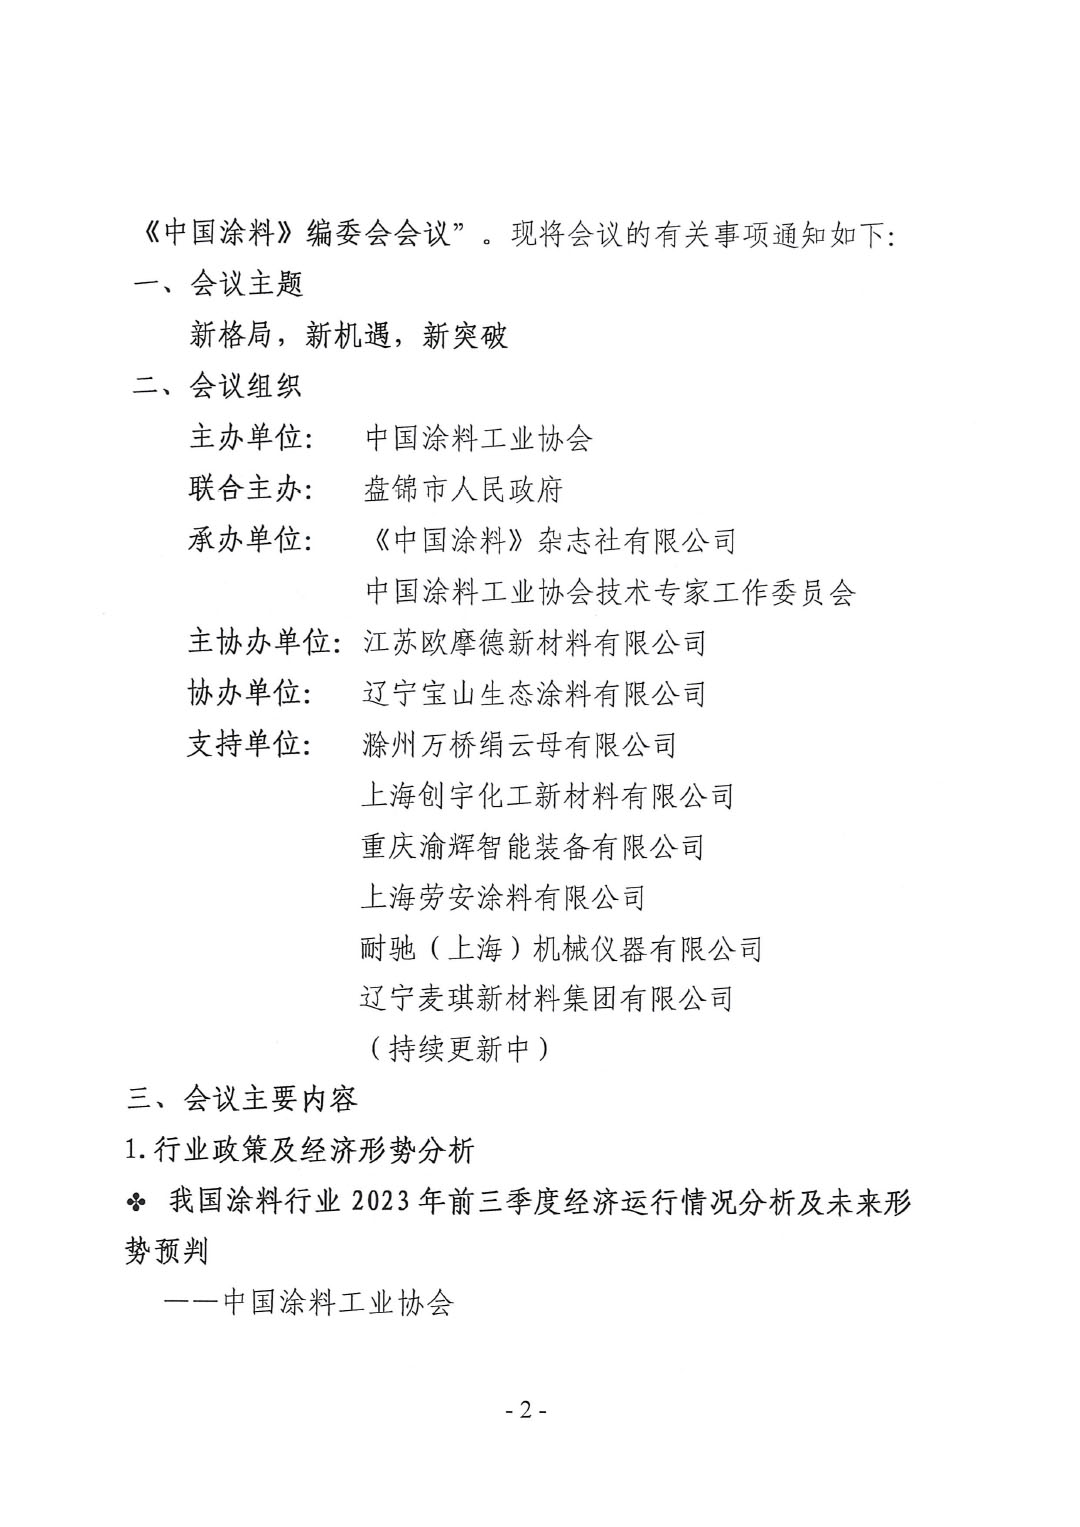 2023年中国涂料工业信息年会通知（发文版）0921-2